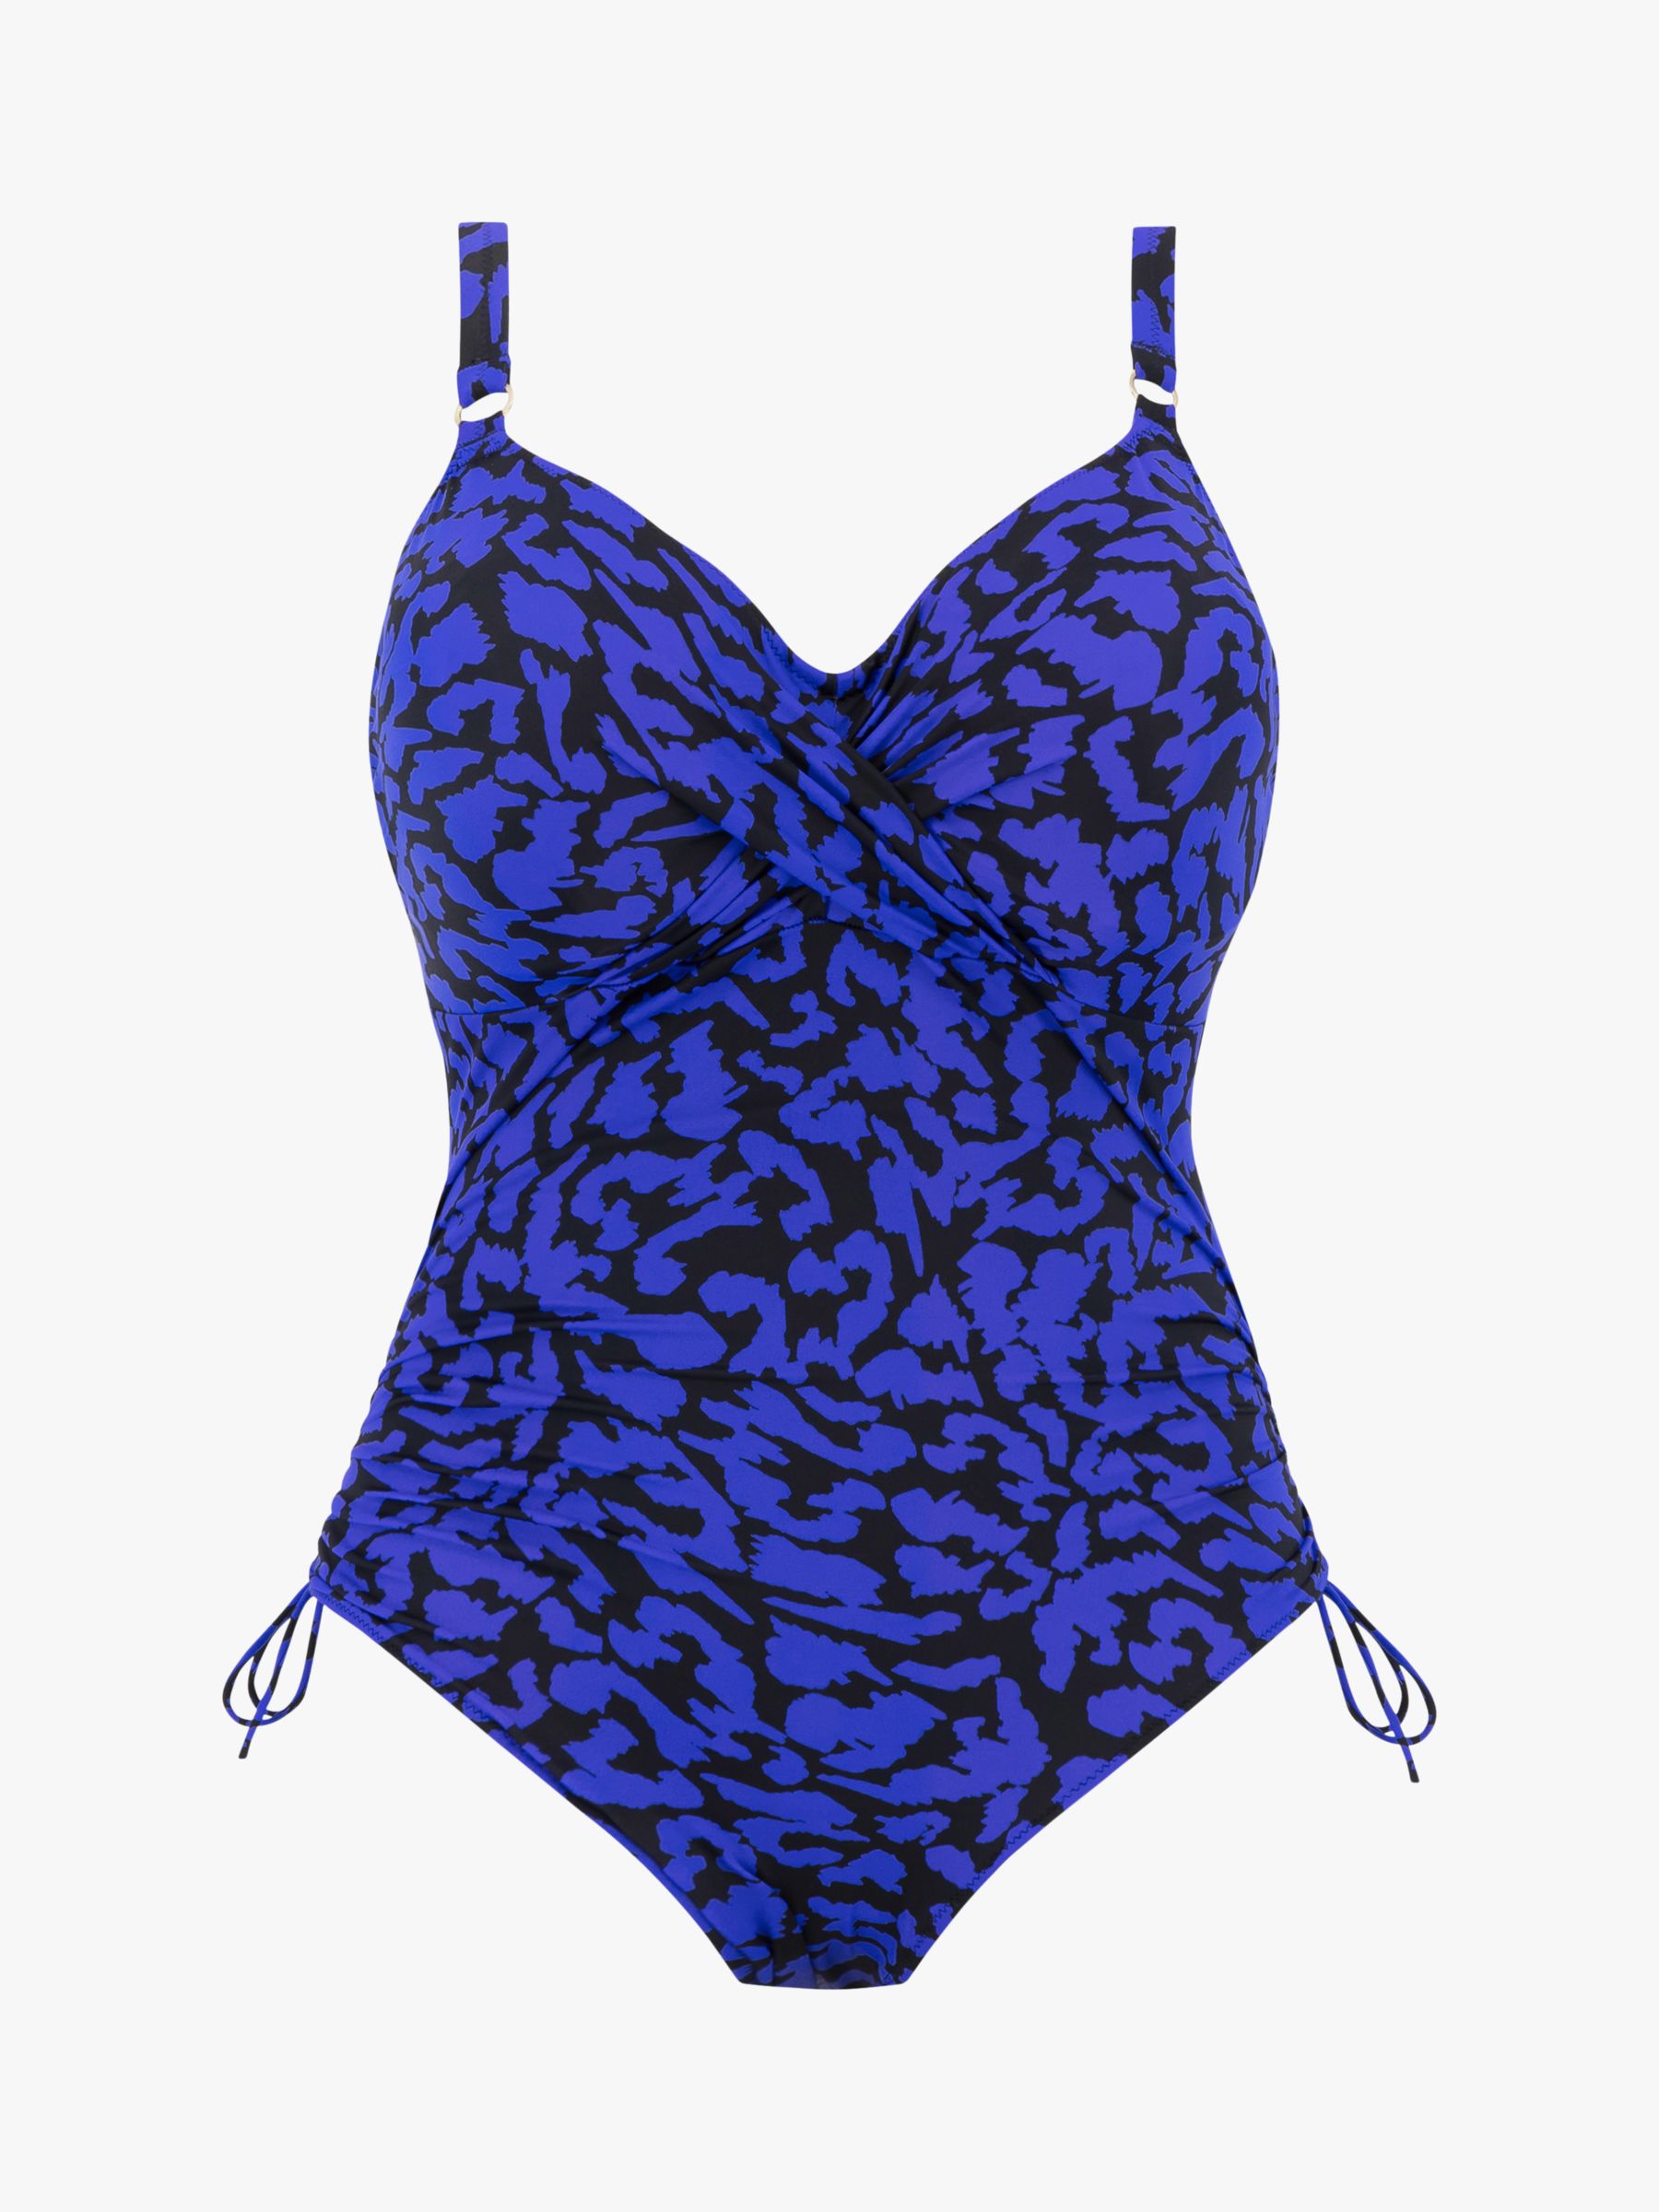 Fantasie Hope Bay Leopard Print Underwired Twist Front Swimsuit, Ultramarine, 34DD